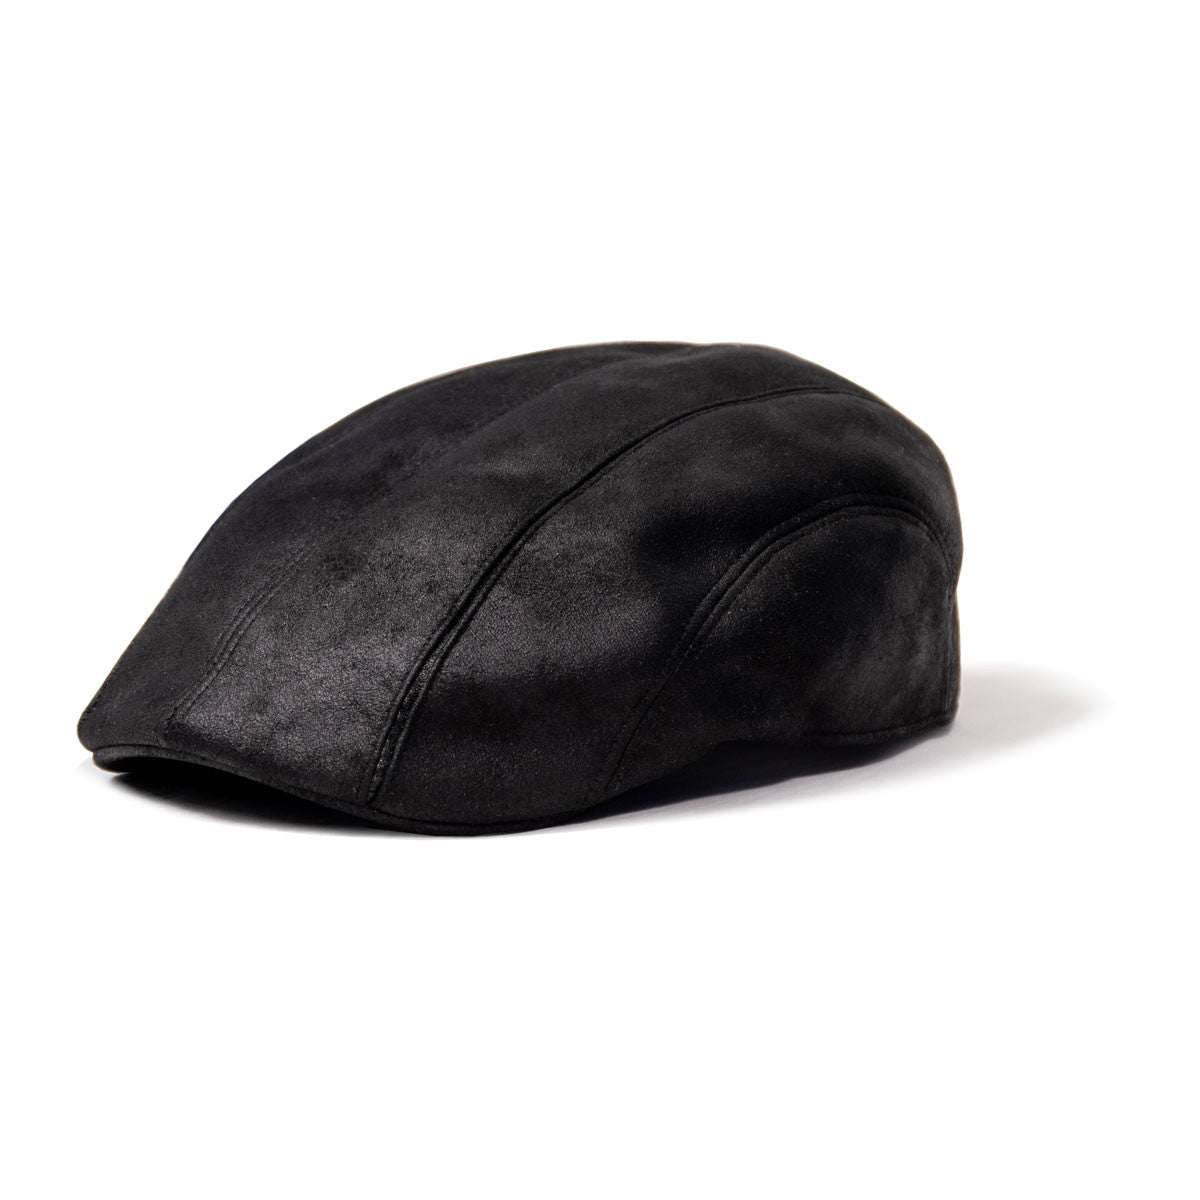 Saint Martin - Faux Leather Driver Cap Black (Profile)